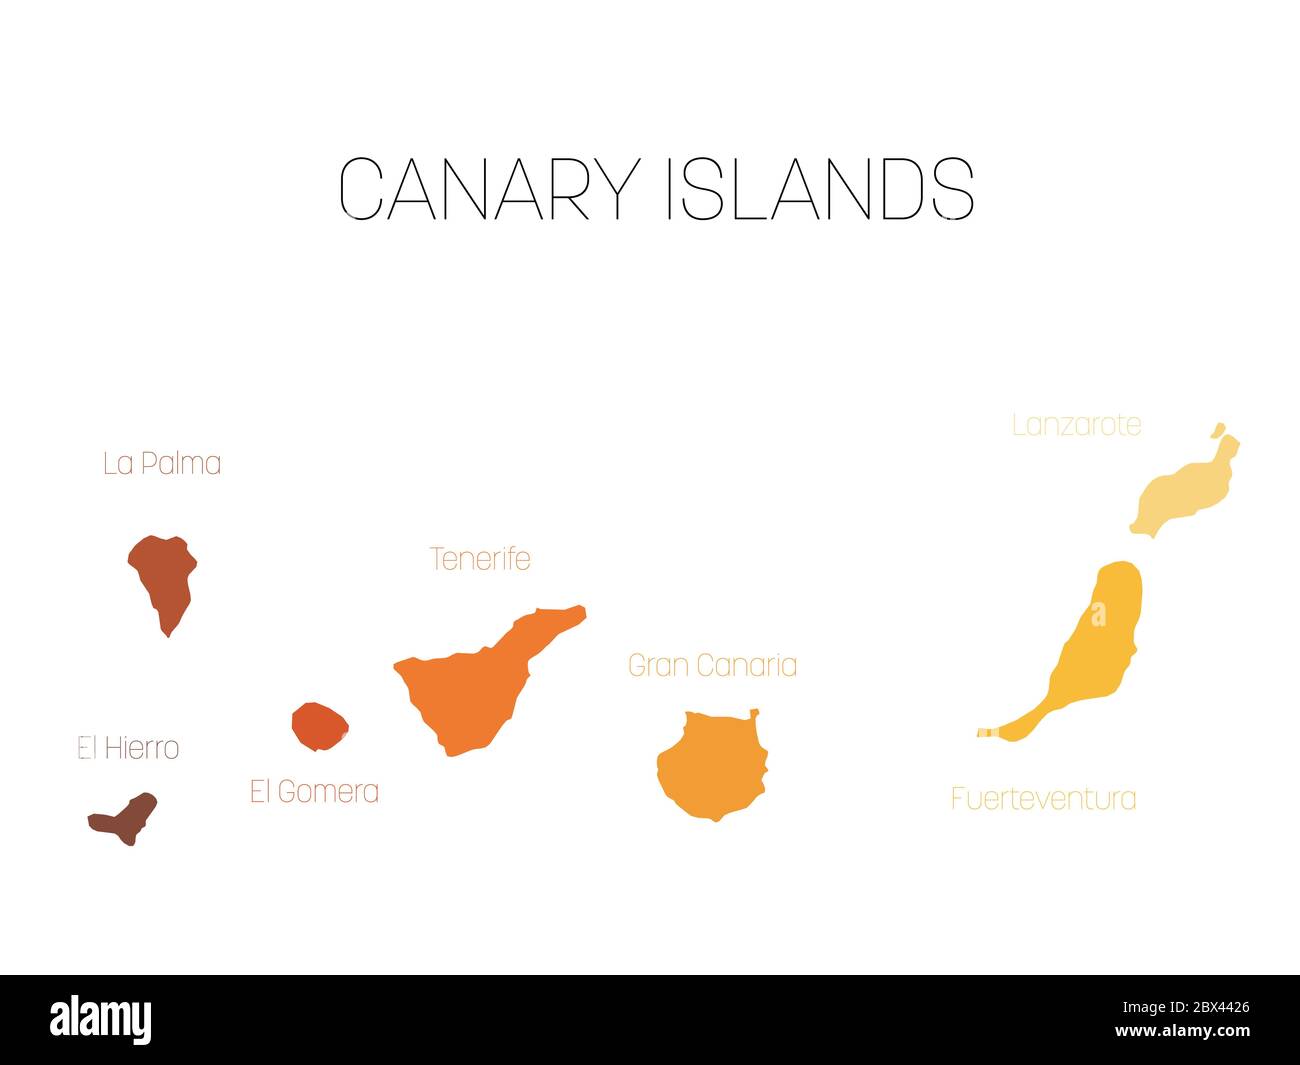 Karte der Kanarischen Inseln, Spanien, mit Etiketten von jeder Insel - El Hierro, La Palma, La Gomera, Teneriffa, Gran Canaria, Fuerteventura und Lanzarote. Vektor Silhouette auf weißem Hintergrund. Stock Vektor